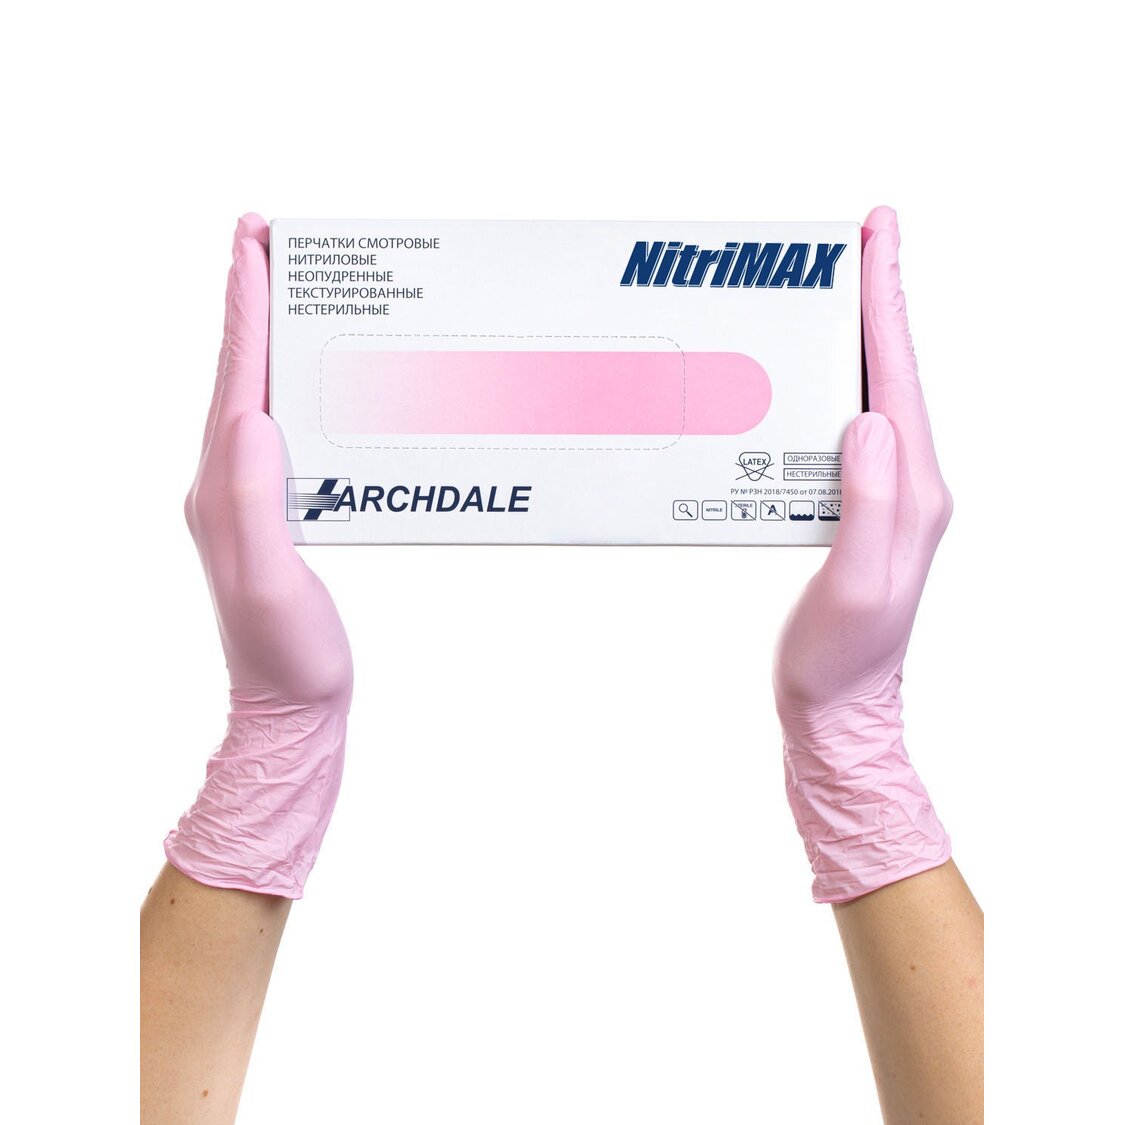 Перчатки Archdale Nitrimax смотровые нестерильные нитриловые неопудренные текстурированные розовые размер S 50 пар